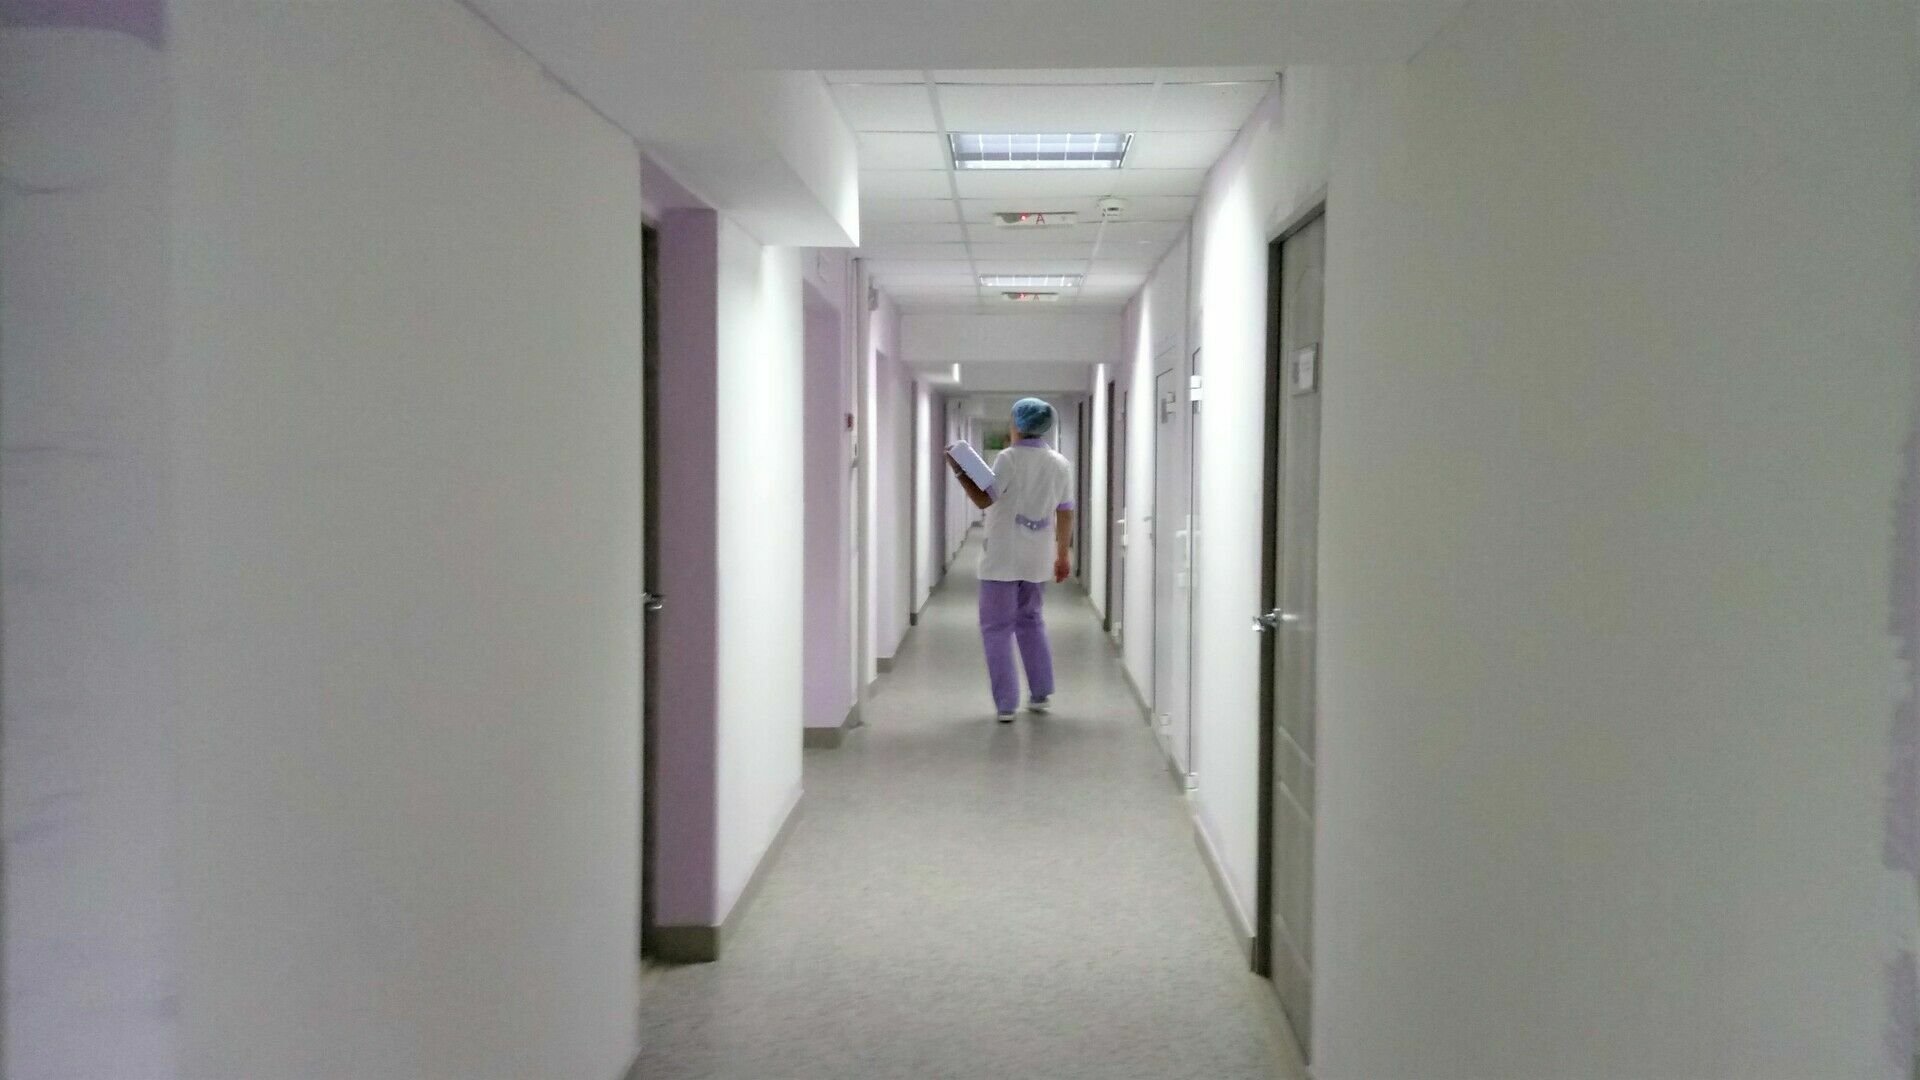 Нижегородская медсестра тяжело травмировалась на работе, принимая душ